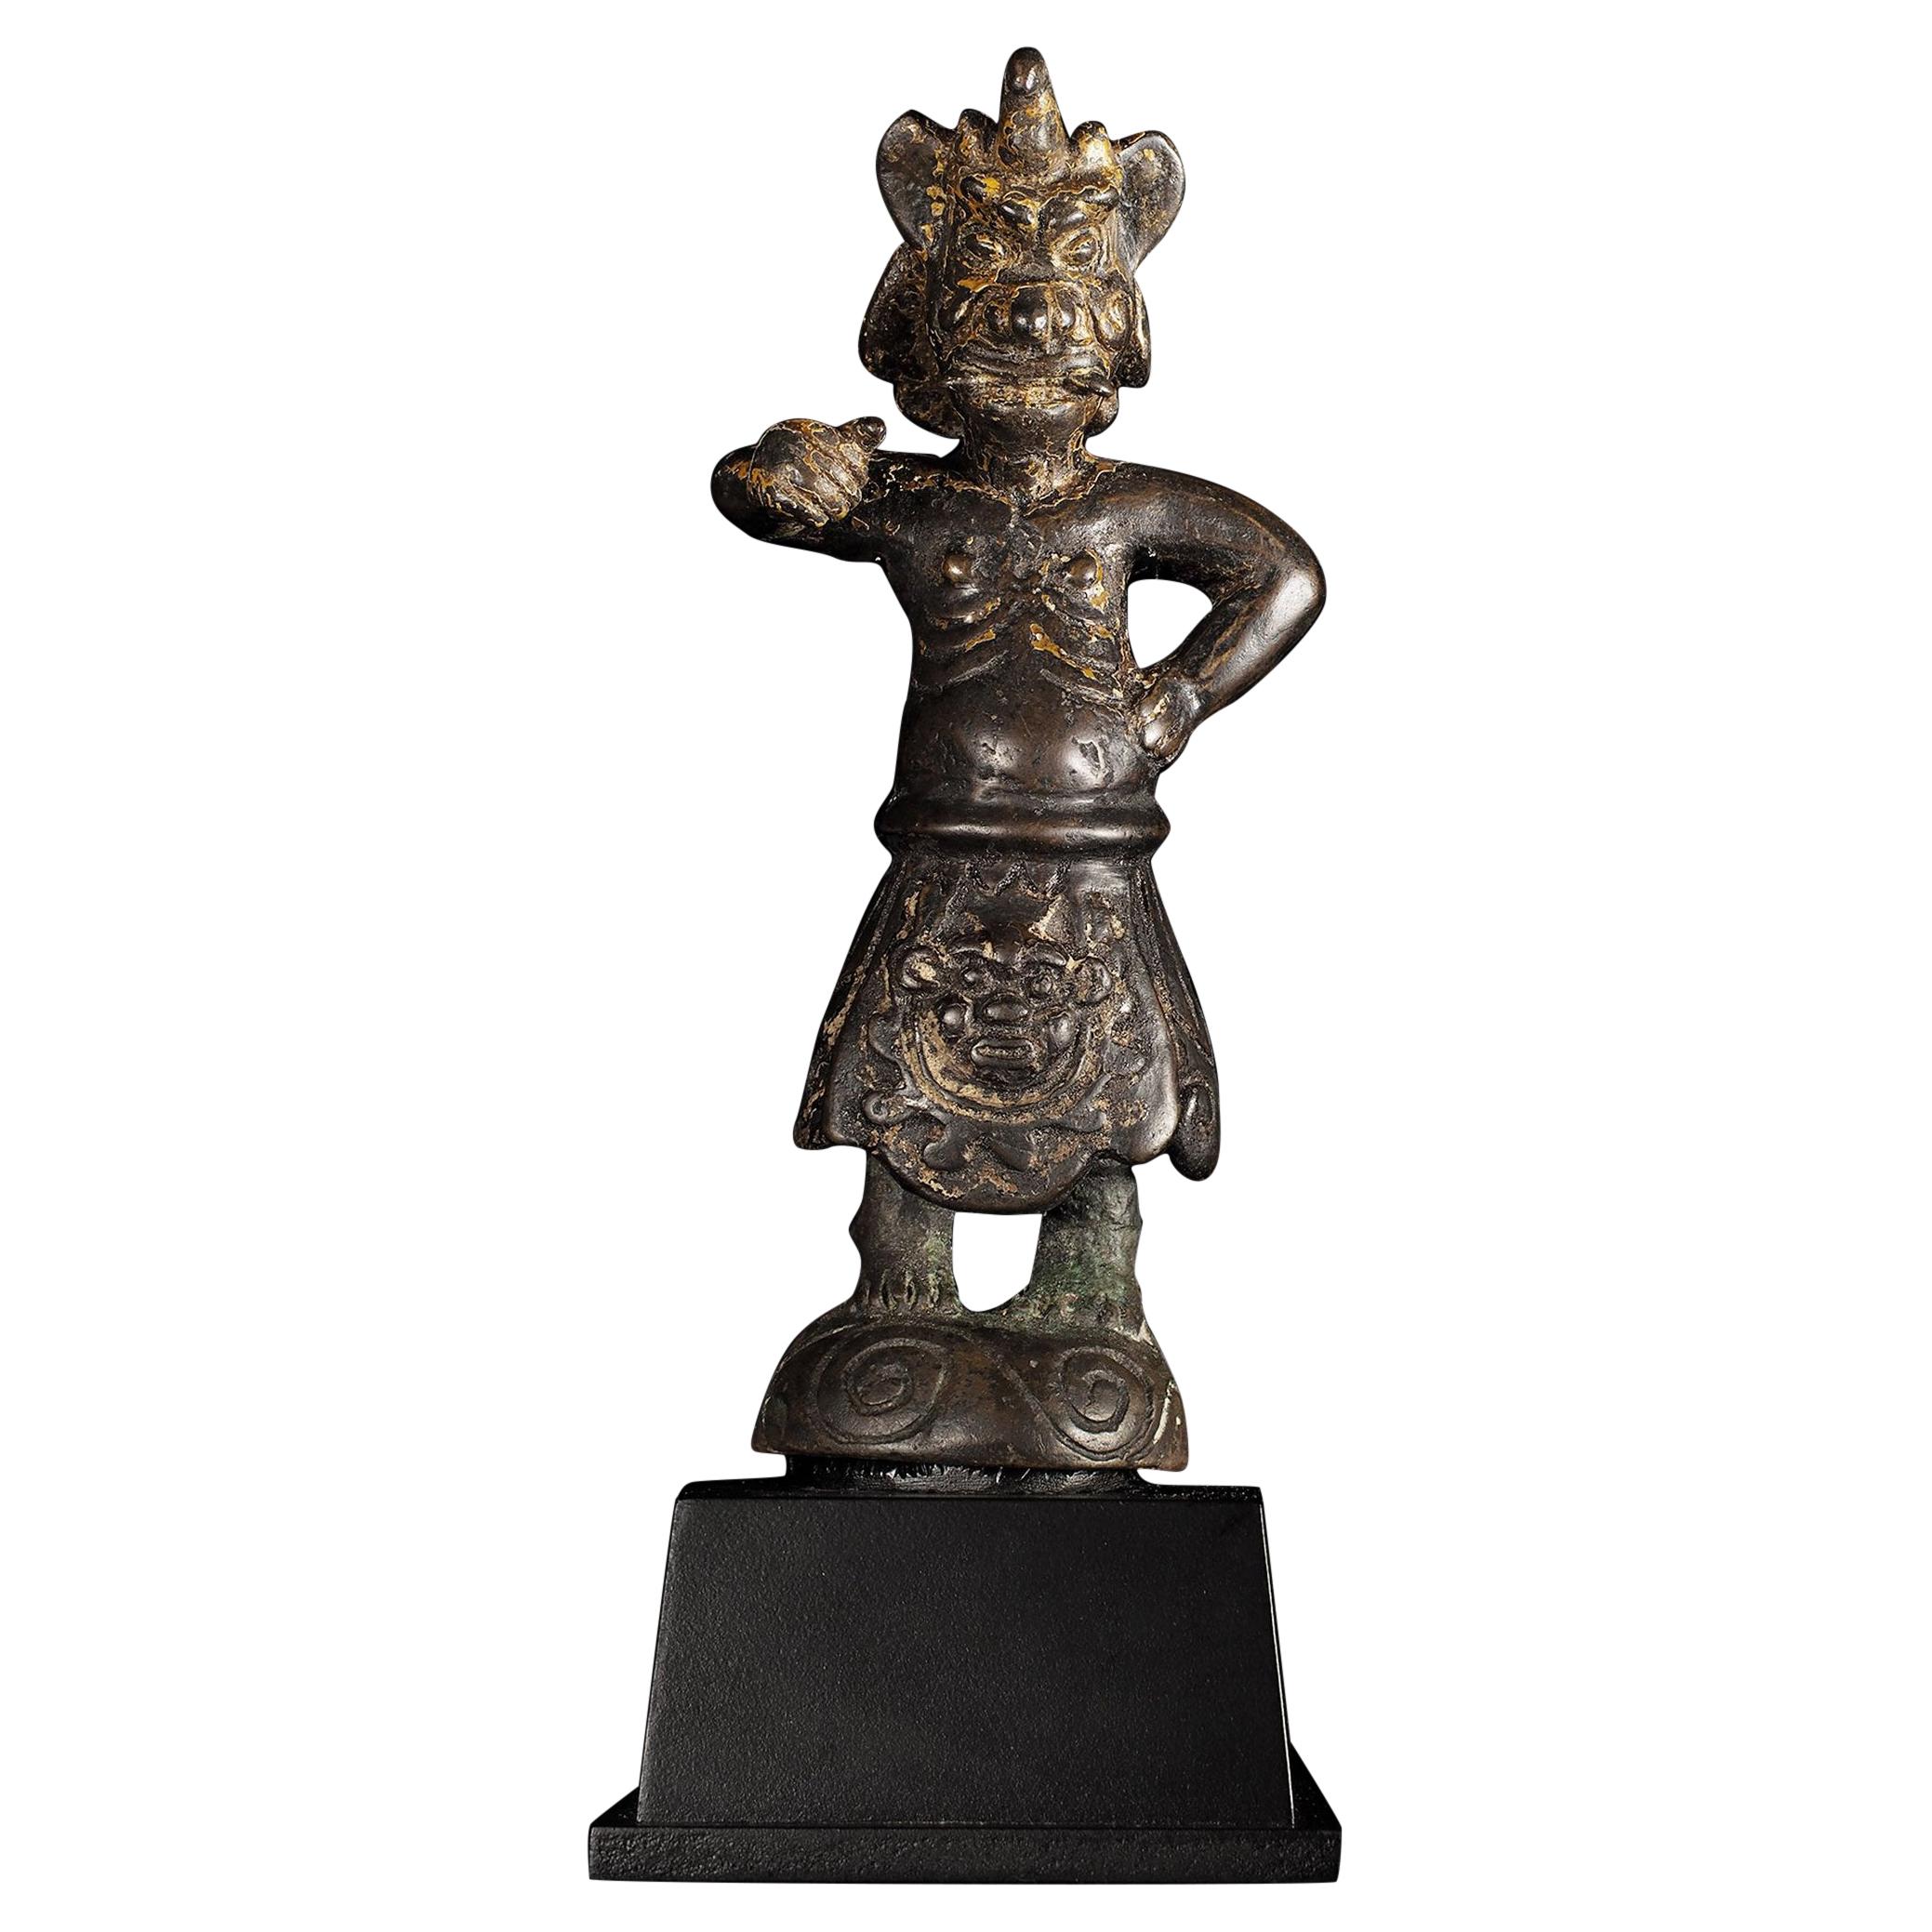 Chinesische Guardian-Figur aus dem 15. Jahrhundert oder früher – 9459